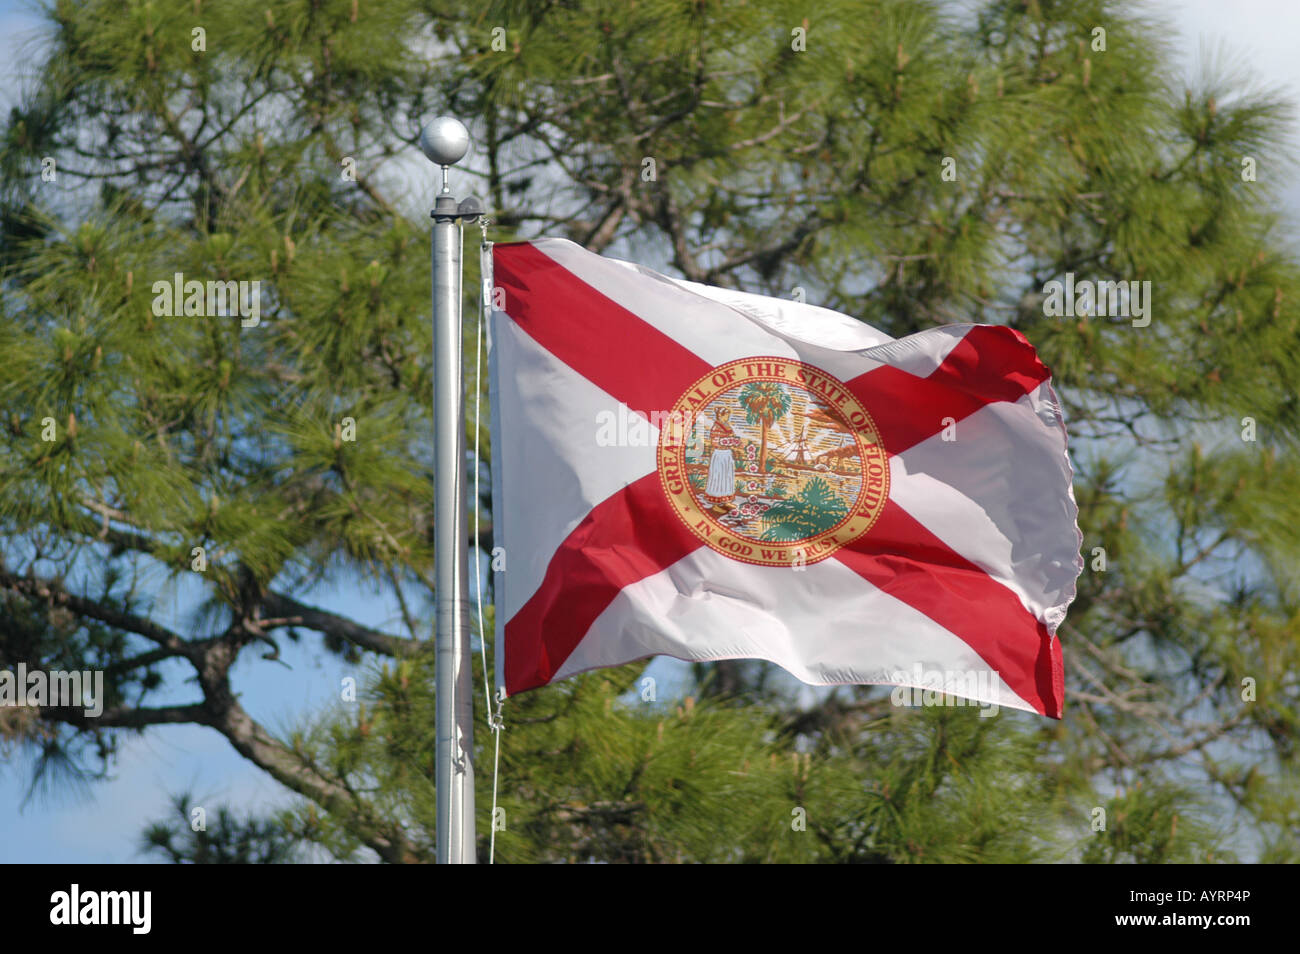 Florida State Flag Bradenton Florida USA pine tree in background Stock Photo